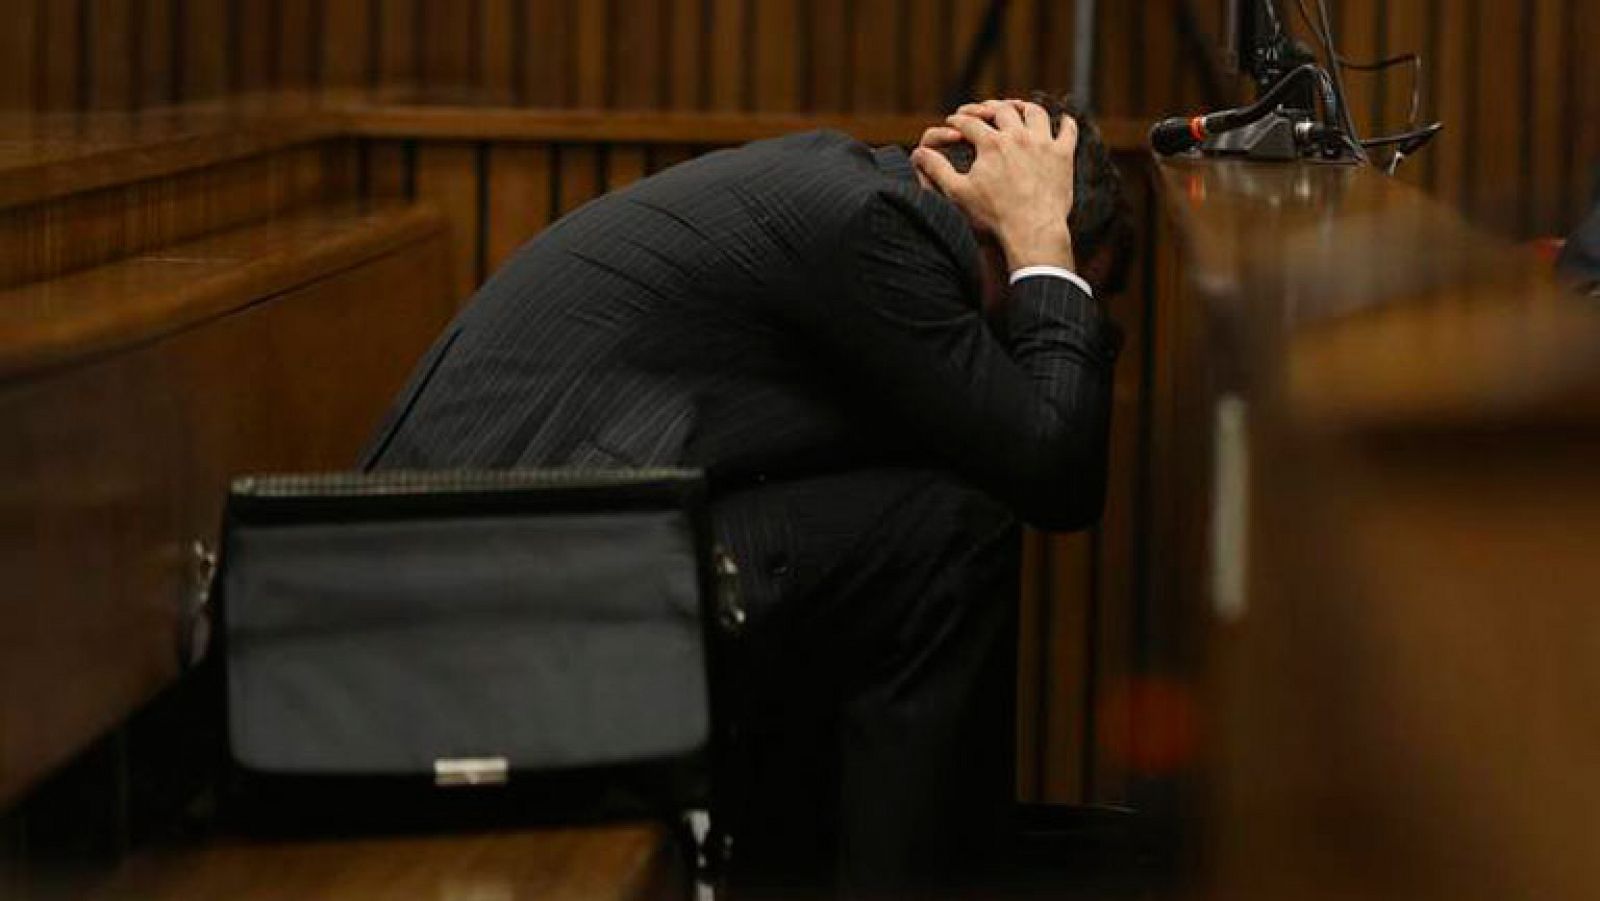 El atleta paralímpico sudafricano Oscar Pistorius protagonizó este lunes angustiosas escenas en el juicio al que se enfrenta por el asesinato de su novia, la modelo Reeva Steenkamp, al vomitar repetidamente mientras el forense Gert Saayman describía las heridas que causaron la muerte de su pareja.

La juez Thokozile Masipa -que prohibió la reproducción en directo de la imagen y el audio del testimonio del forense- tuvo que aplazar en un primer momento la declaración de Saymann, debido al estado de Pistorius, que se cubrió la cabeza con las manos y varios pañuelos y fue abrazado por sus dos hermanos durante el receso.